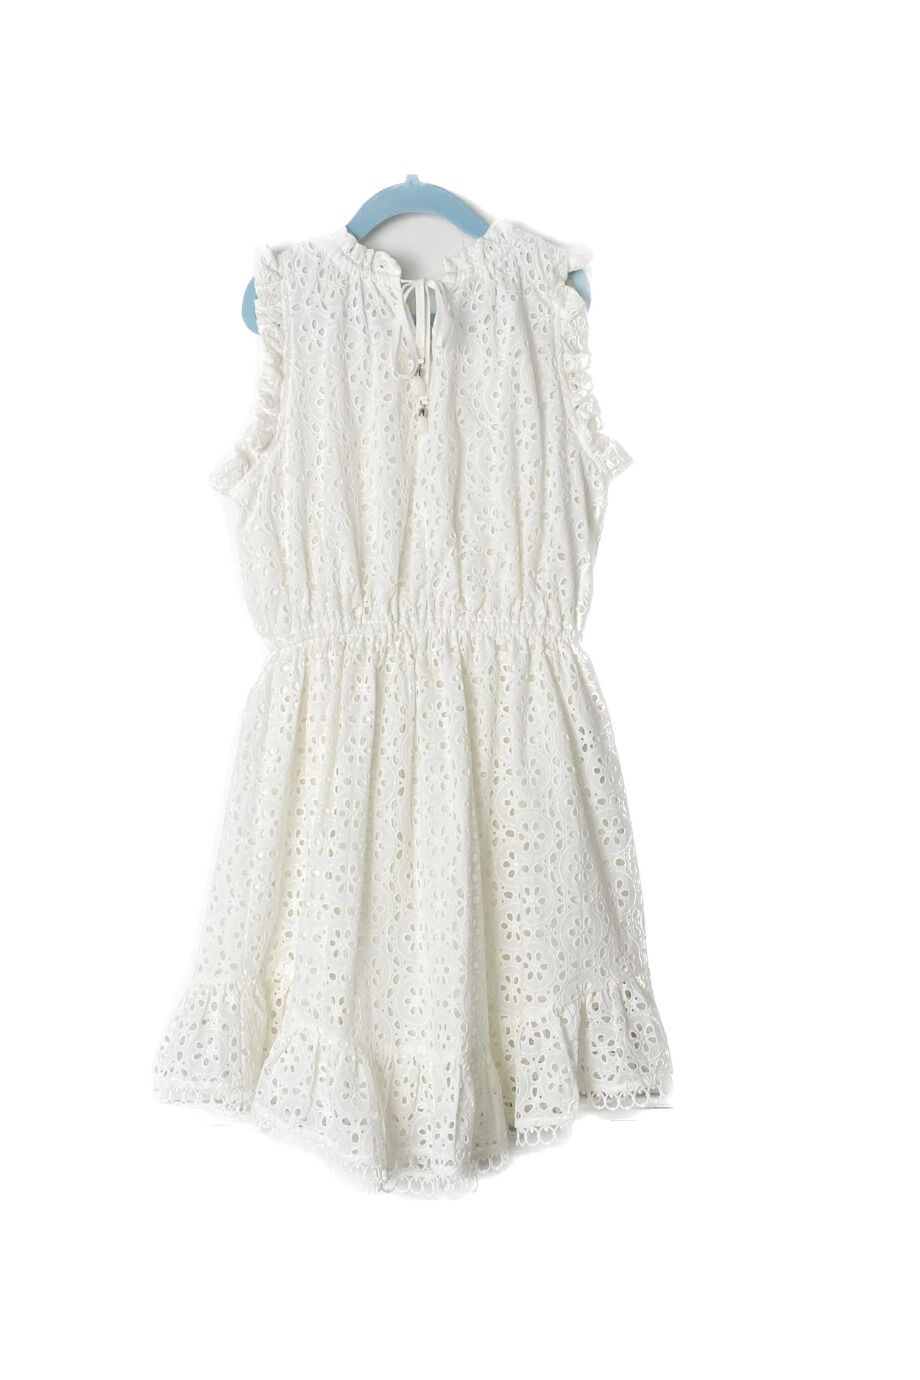 image 2 Детское платье ришелье белого цвета